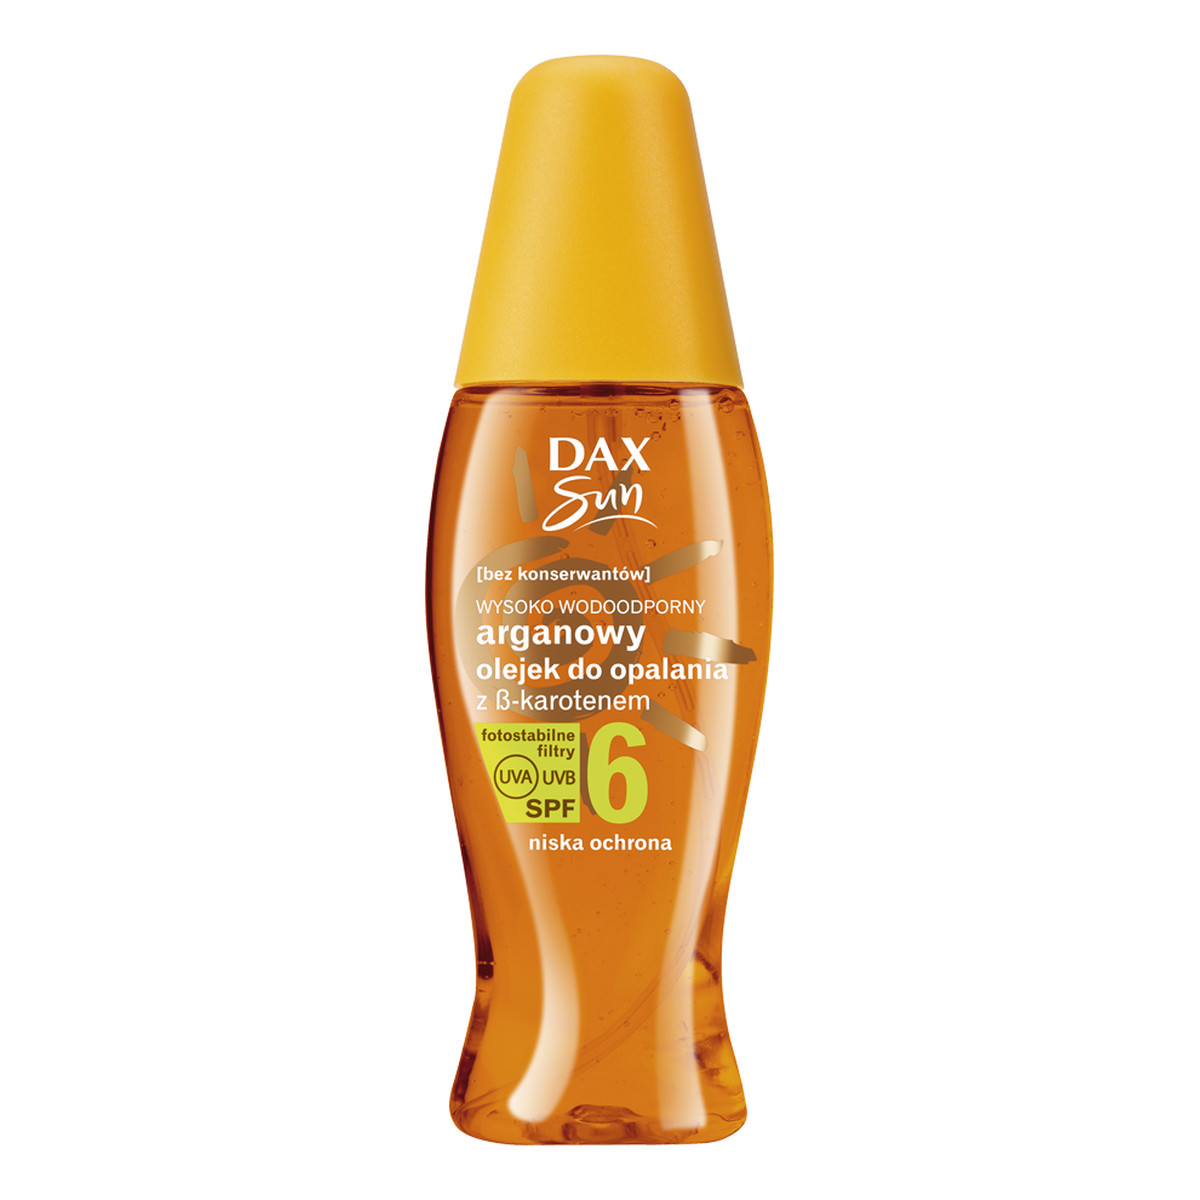 Dax Sun Arganowy Olejek Do Opalania z Beta-Karotenem SPF 6 Spray 150ml